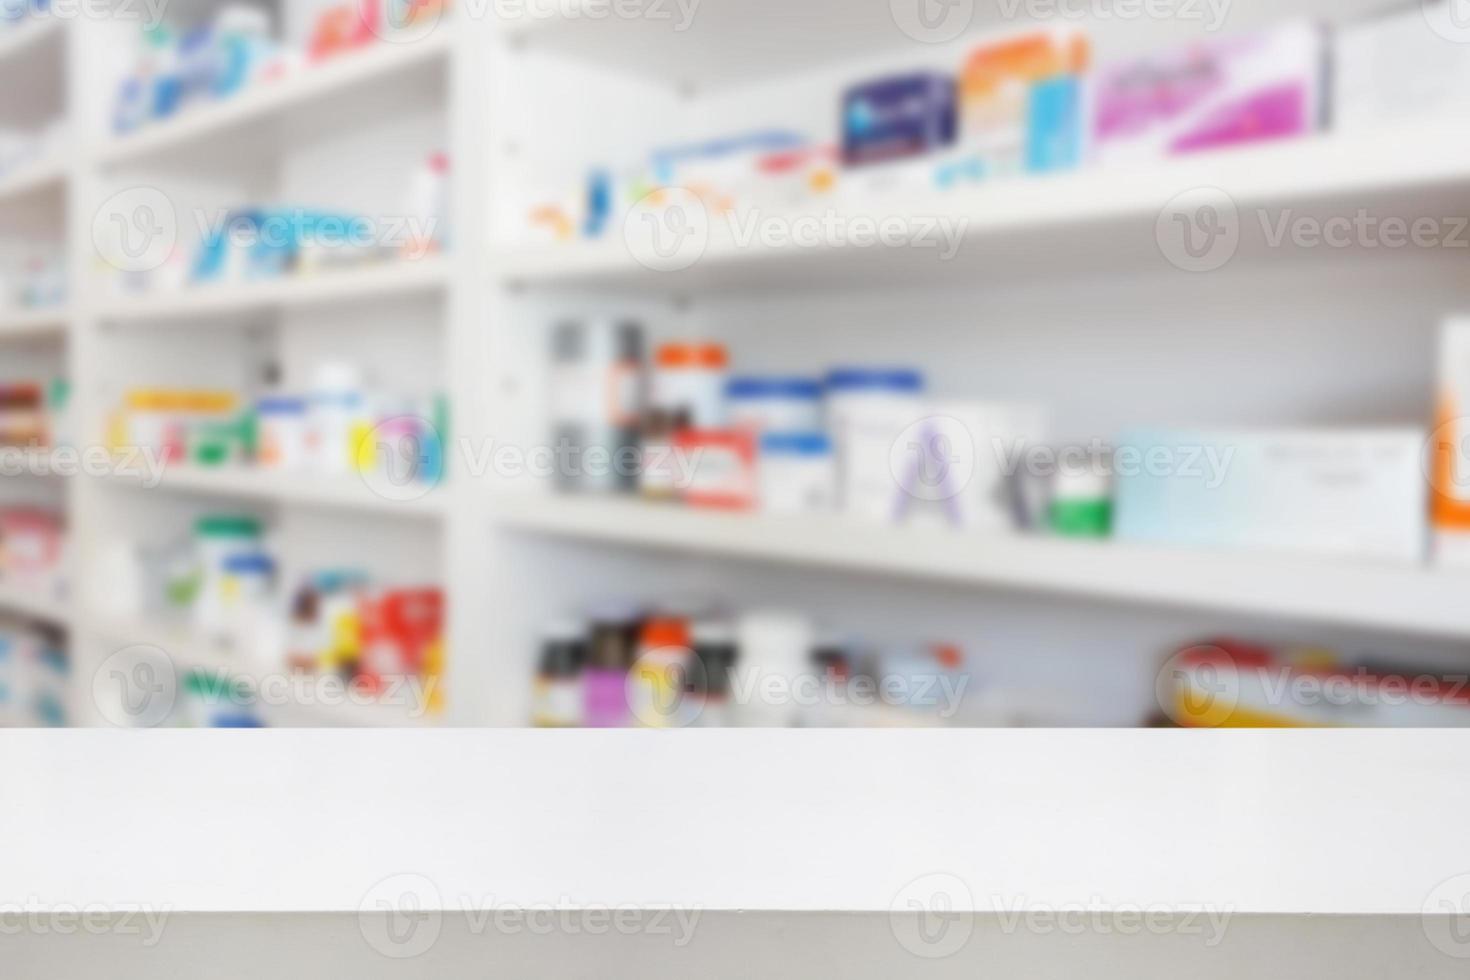 tavolo da banco farmacia farmacia con sfondo astratto sfocato con prodotti medicinali e sanitari sugli scaffali foto